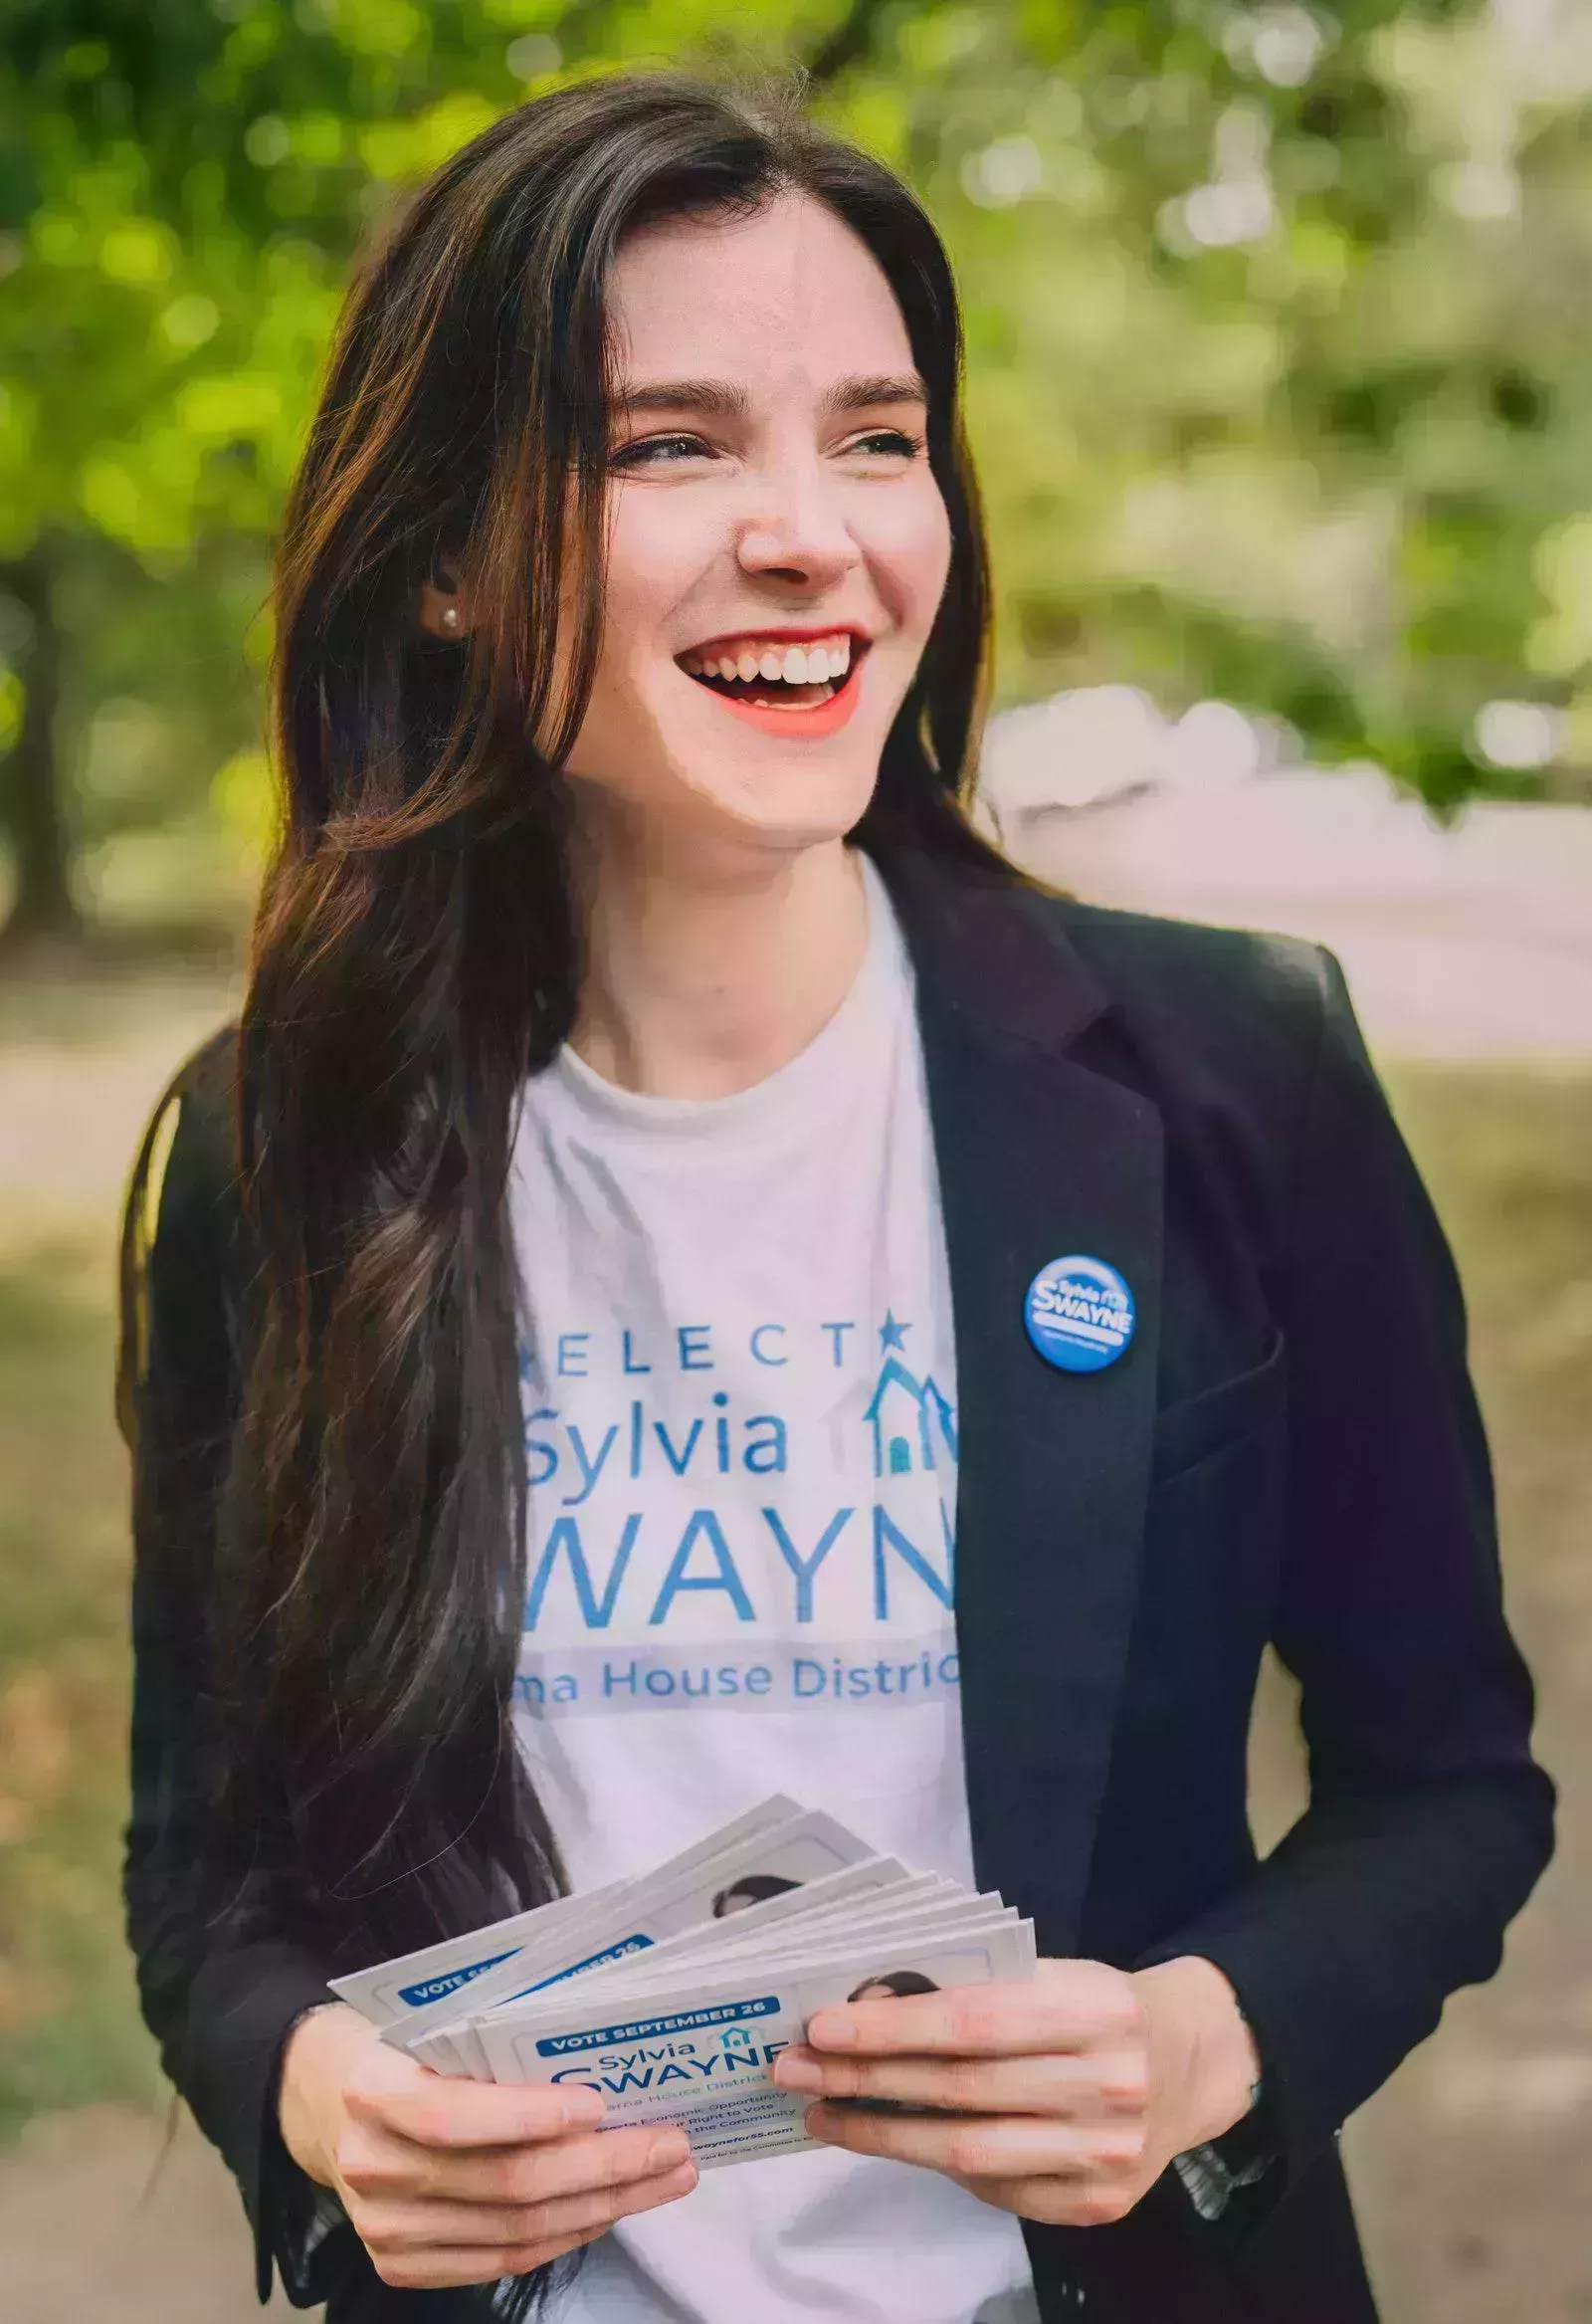 La campaña electoral especial de Sylvia Swayne tiene muchas primicias